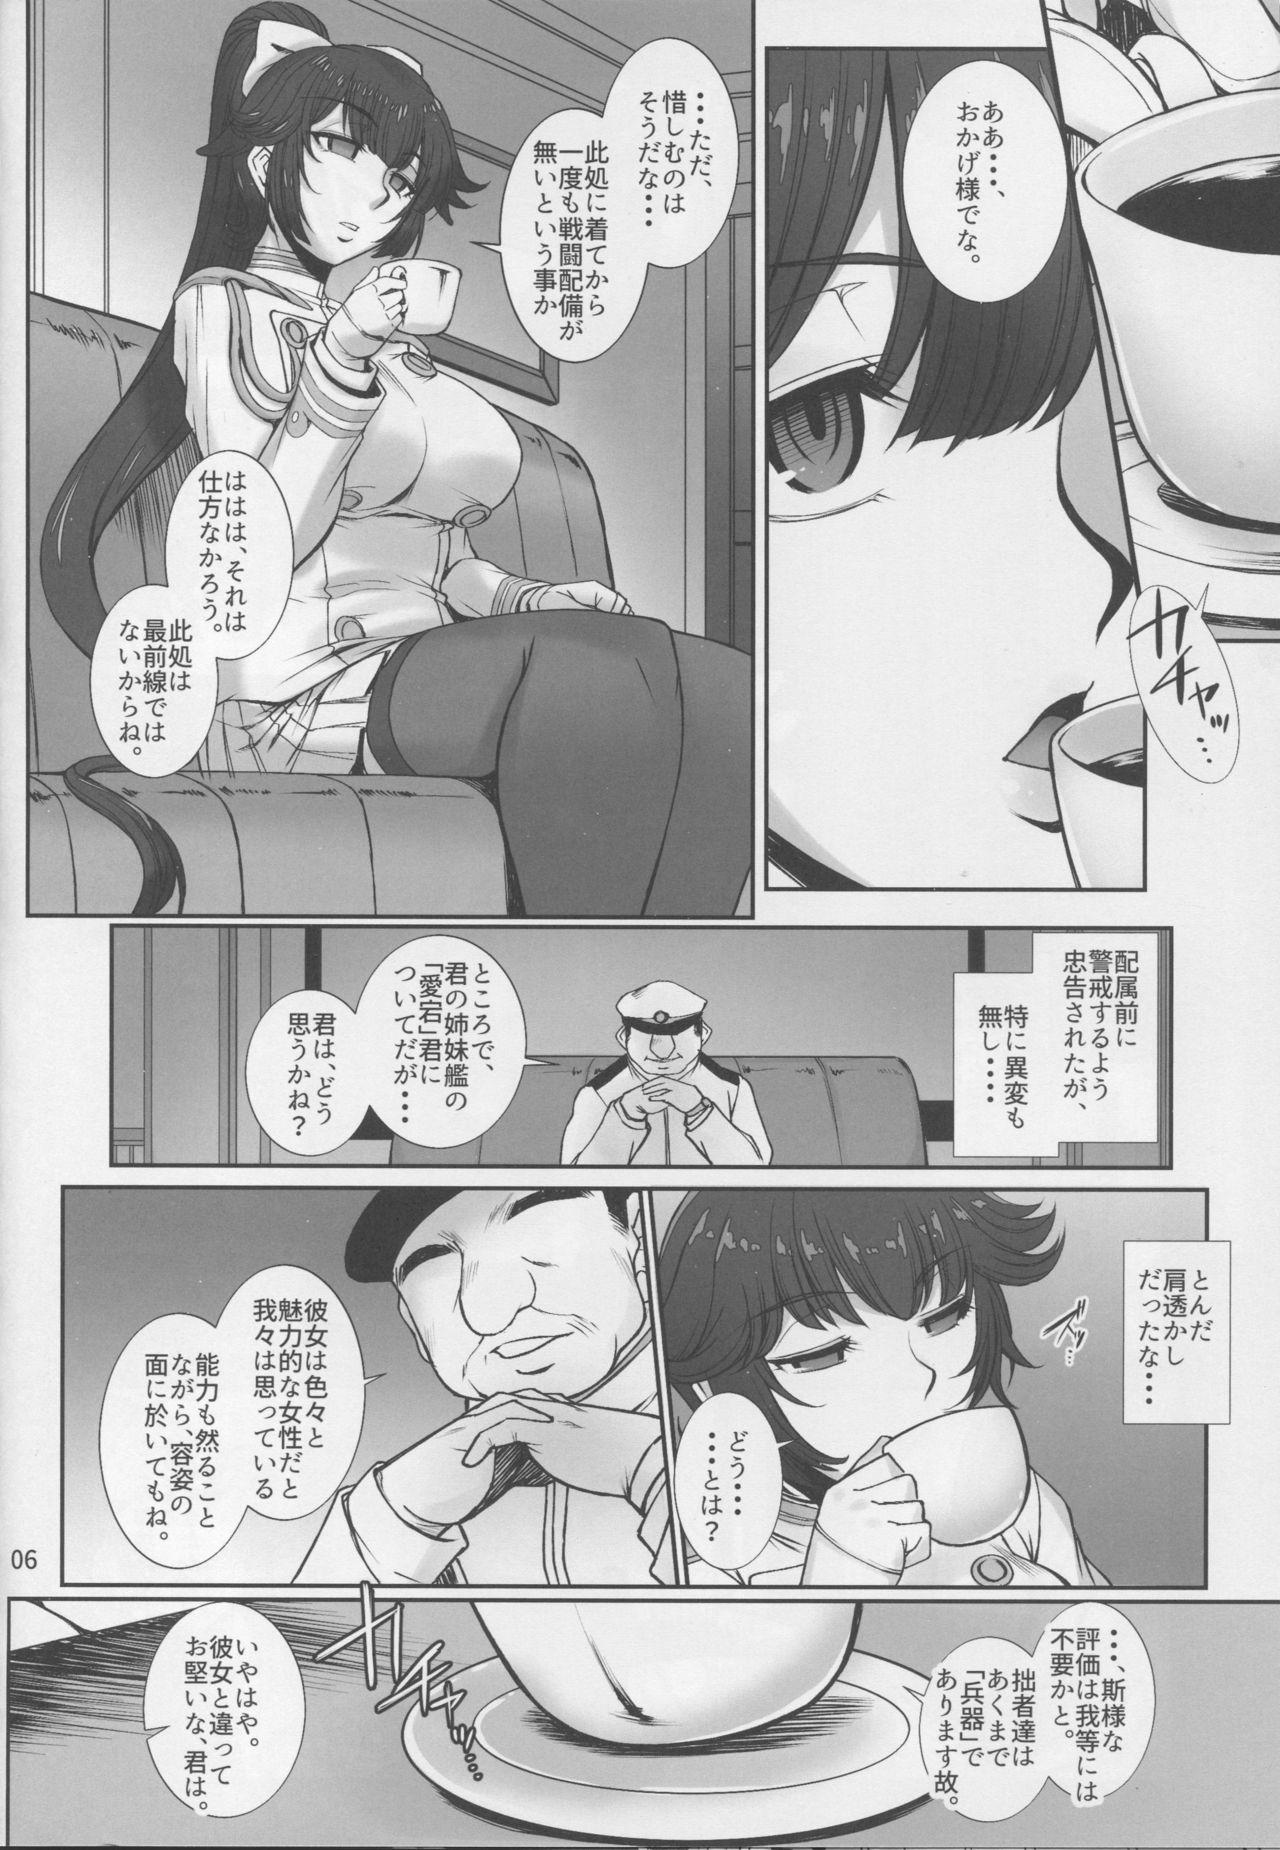 Boots Takao wa Midara ni Musebinaku - Azur lane Hotfuck - Page 5